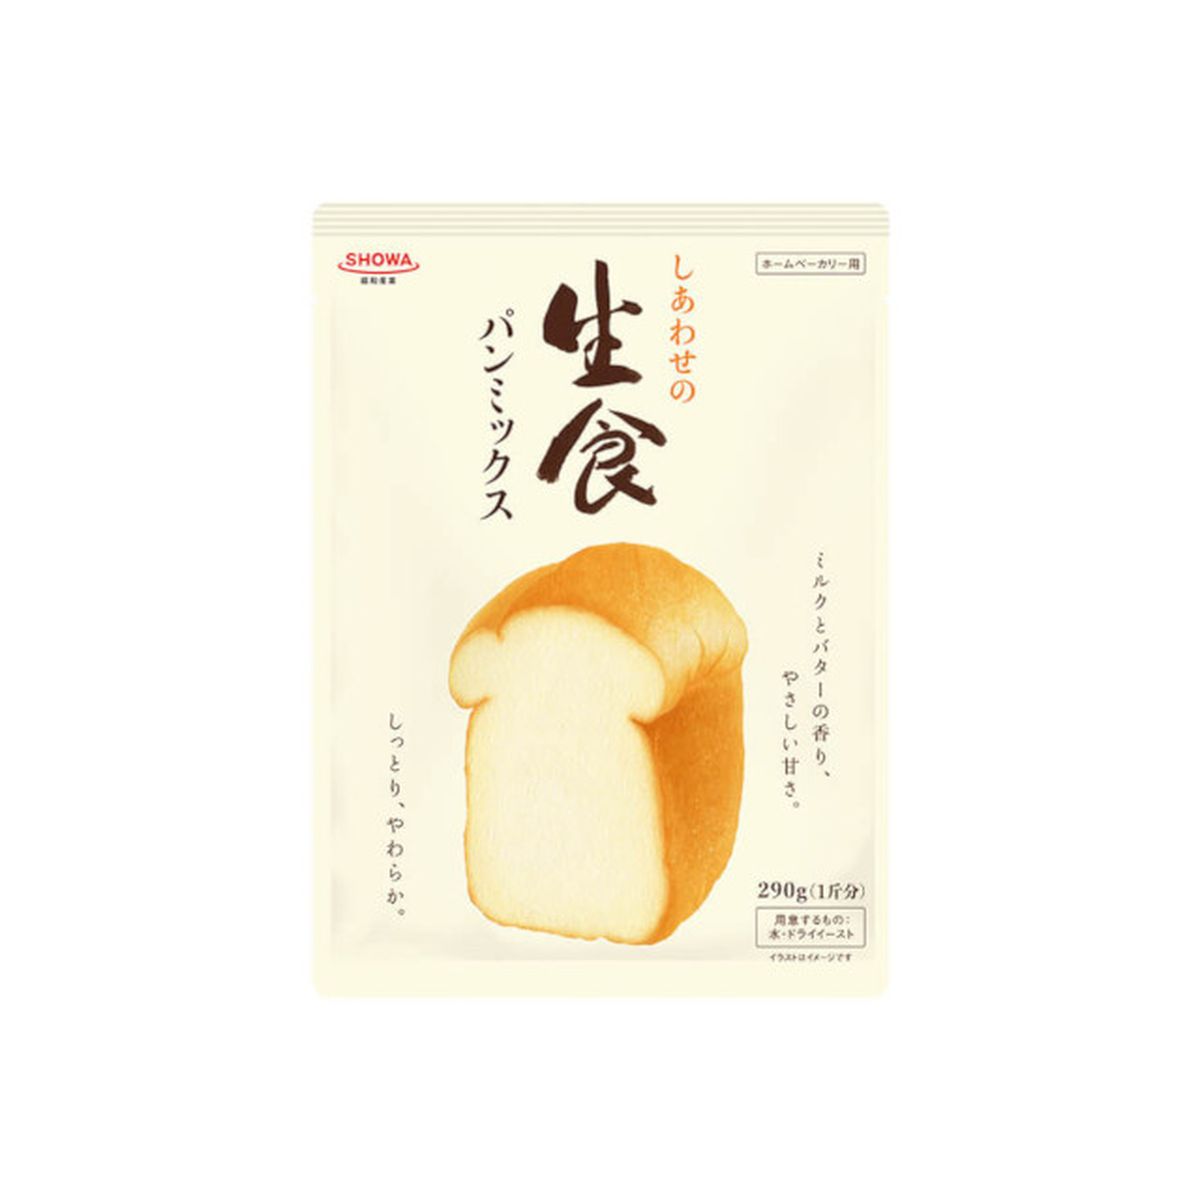 【送料無料】【8個入り】昭和産業 しあわせの生食パンミックス 290g